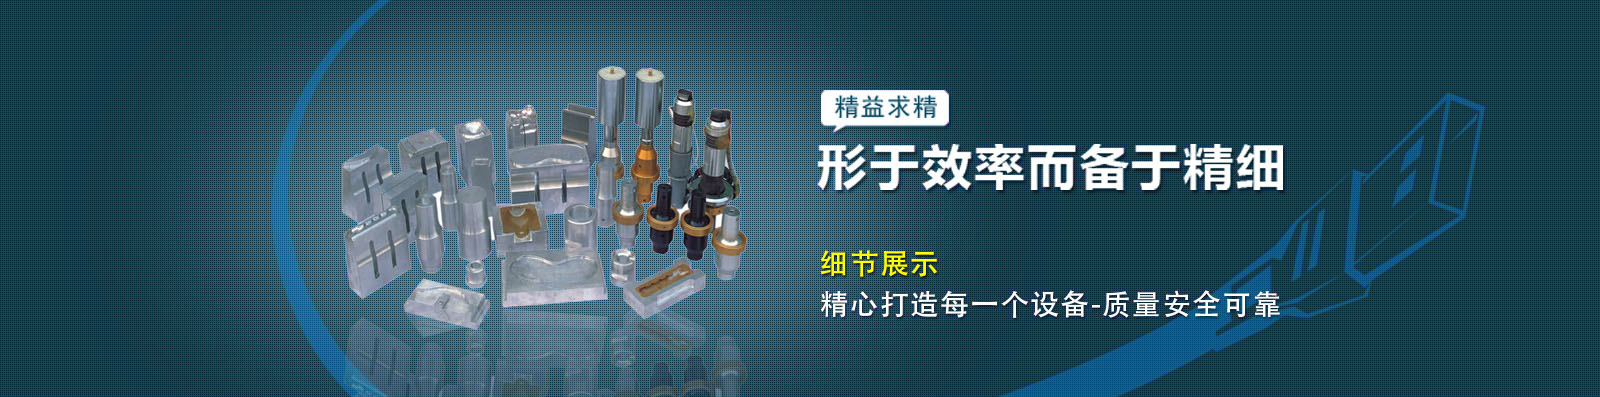 超声波塑料焊接机|超声波焊接机|超声波焊接机价格